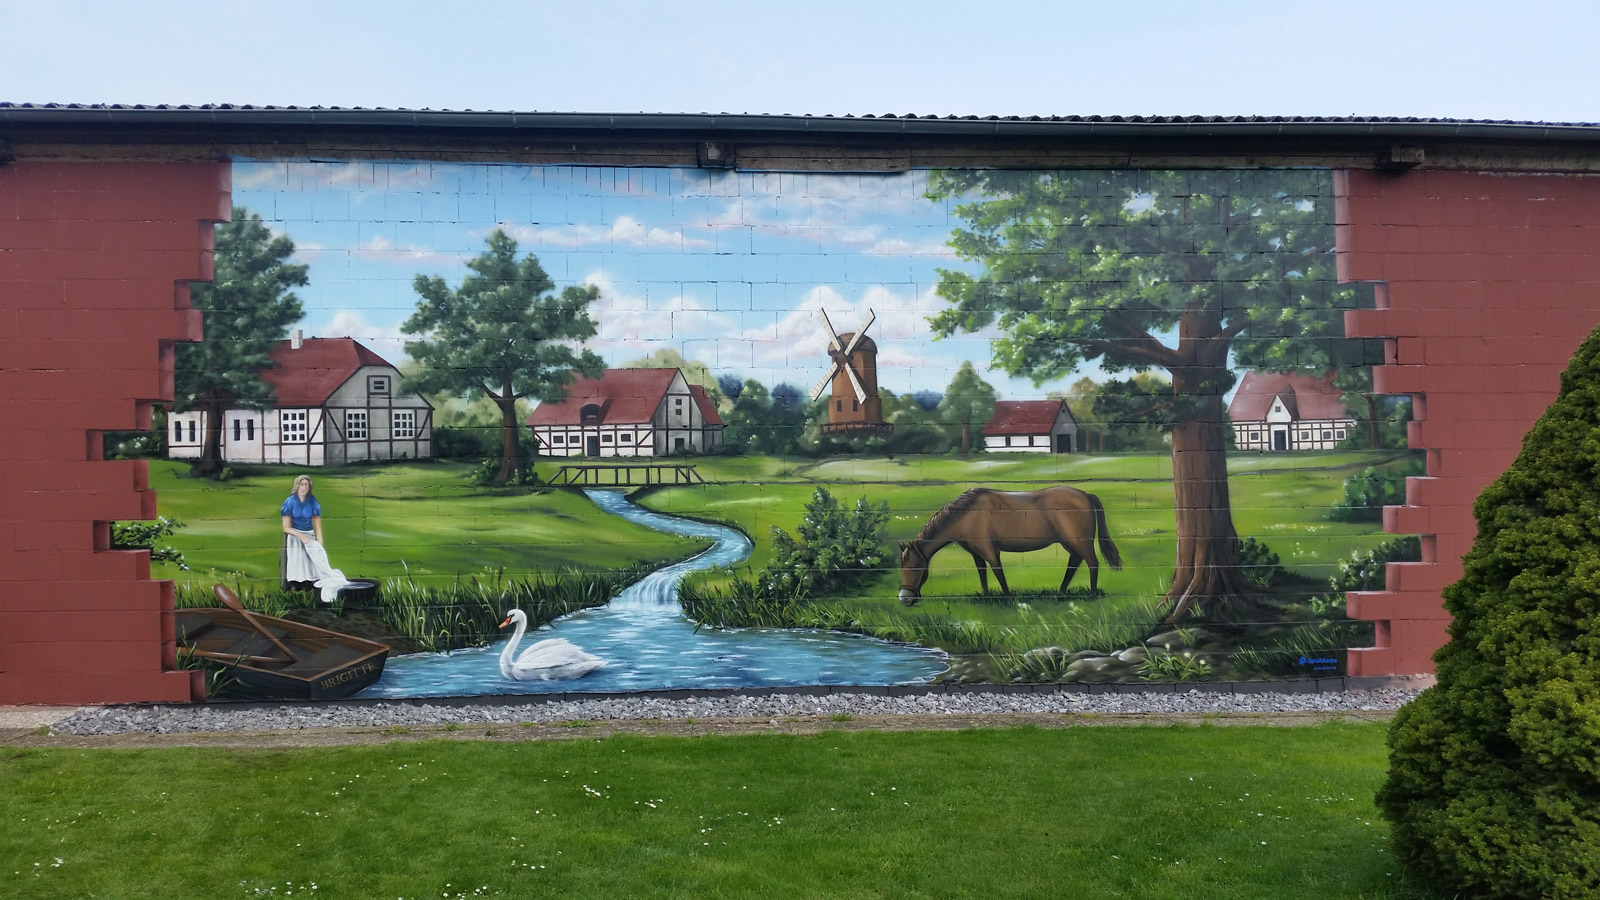 Fassaden Gestaltung Wendland. Ein großes Wandbild mit einer Landschaft. Im Hintergrund ein Dorf mit Fachwerkhäusern und einer Mühle. Im Vordergrund ein Bach mit einem Schwan, ein Pferd grast auf deiner Wiese und ein Ruderboot liegt am unteren linken Rand.